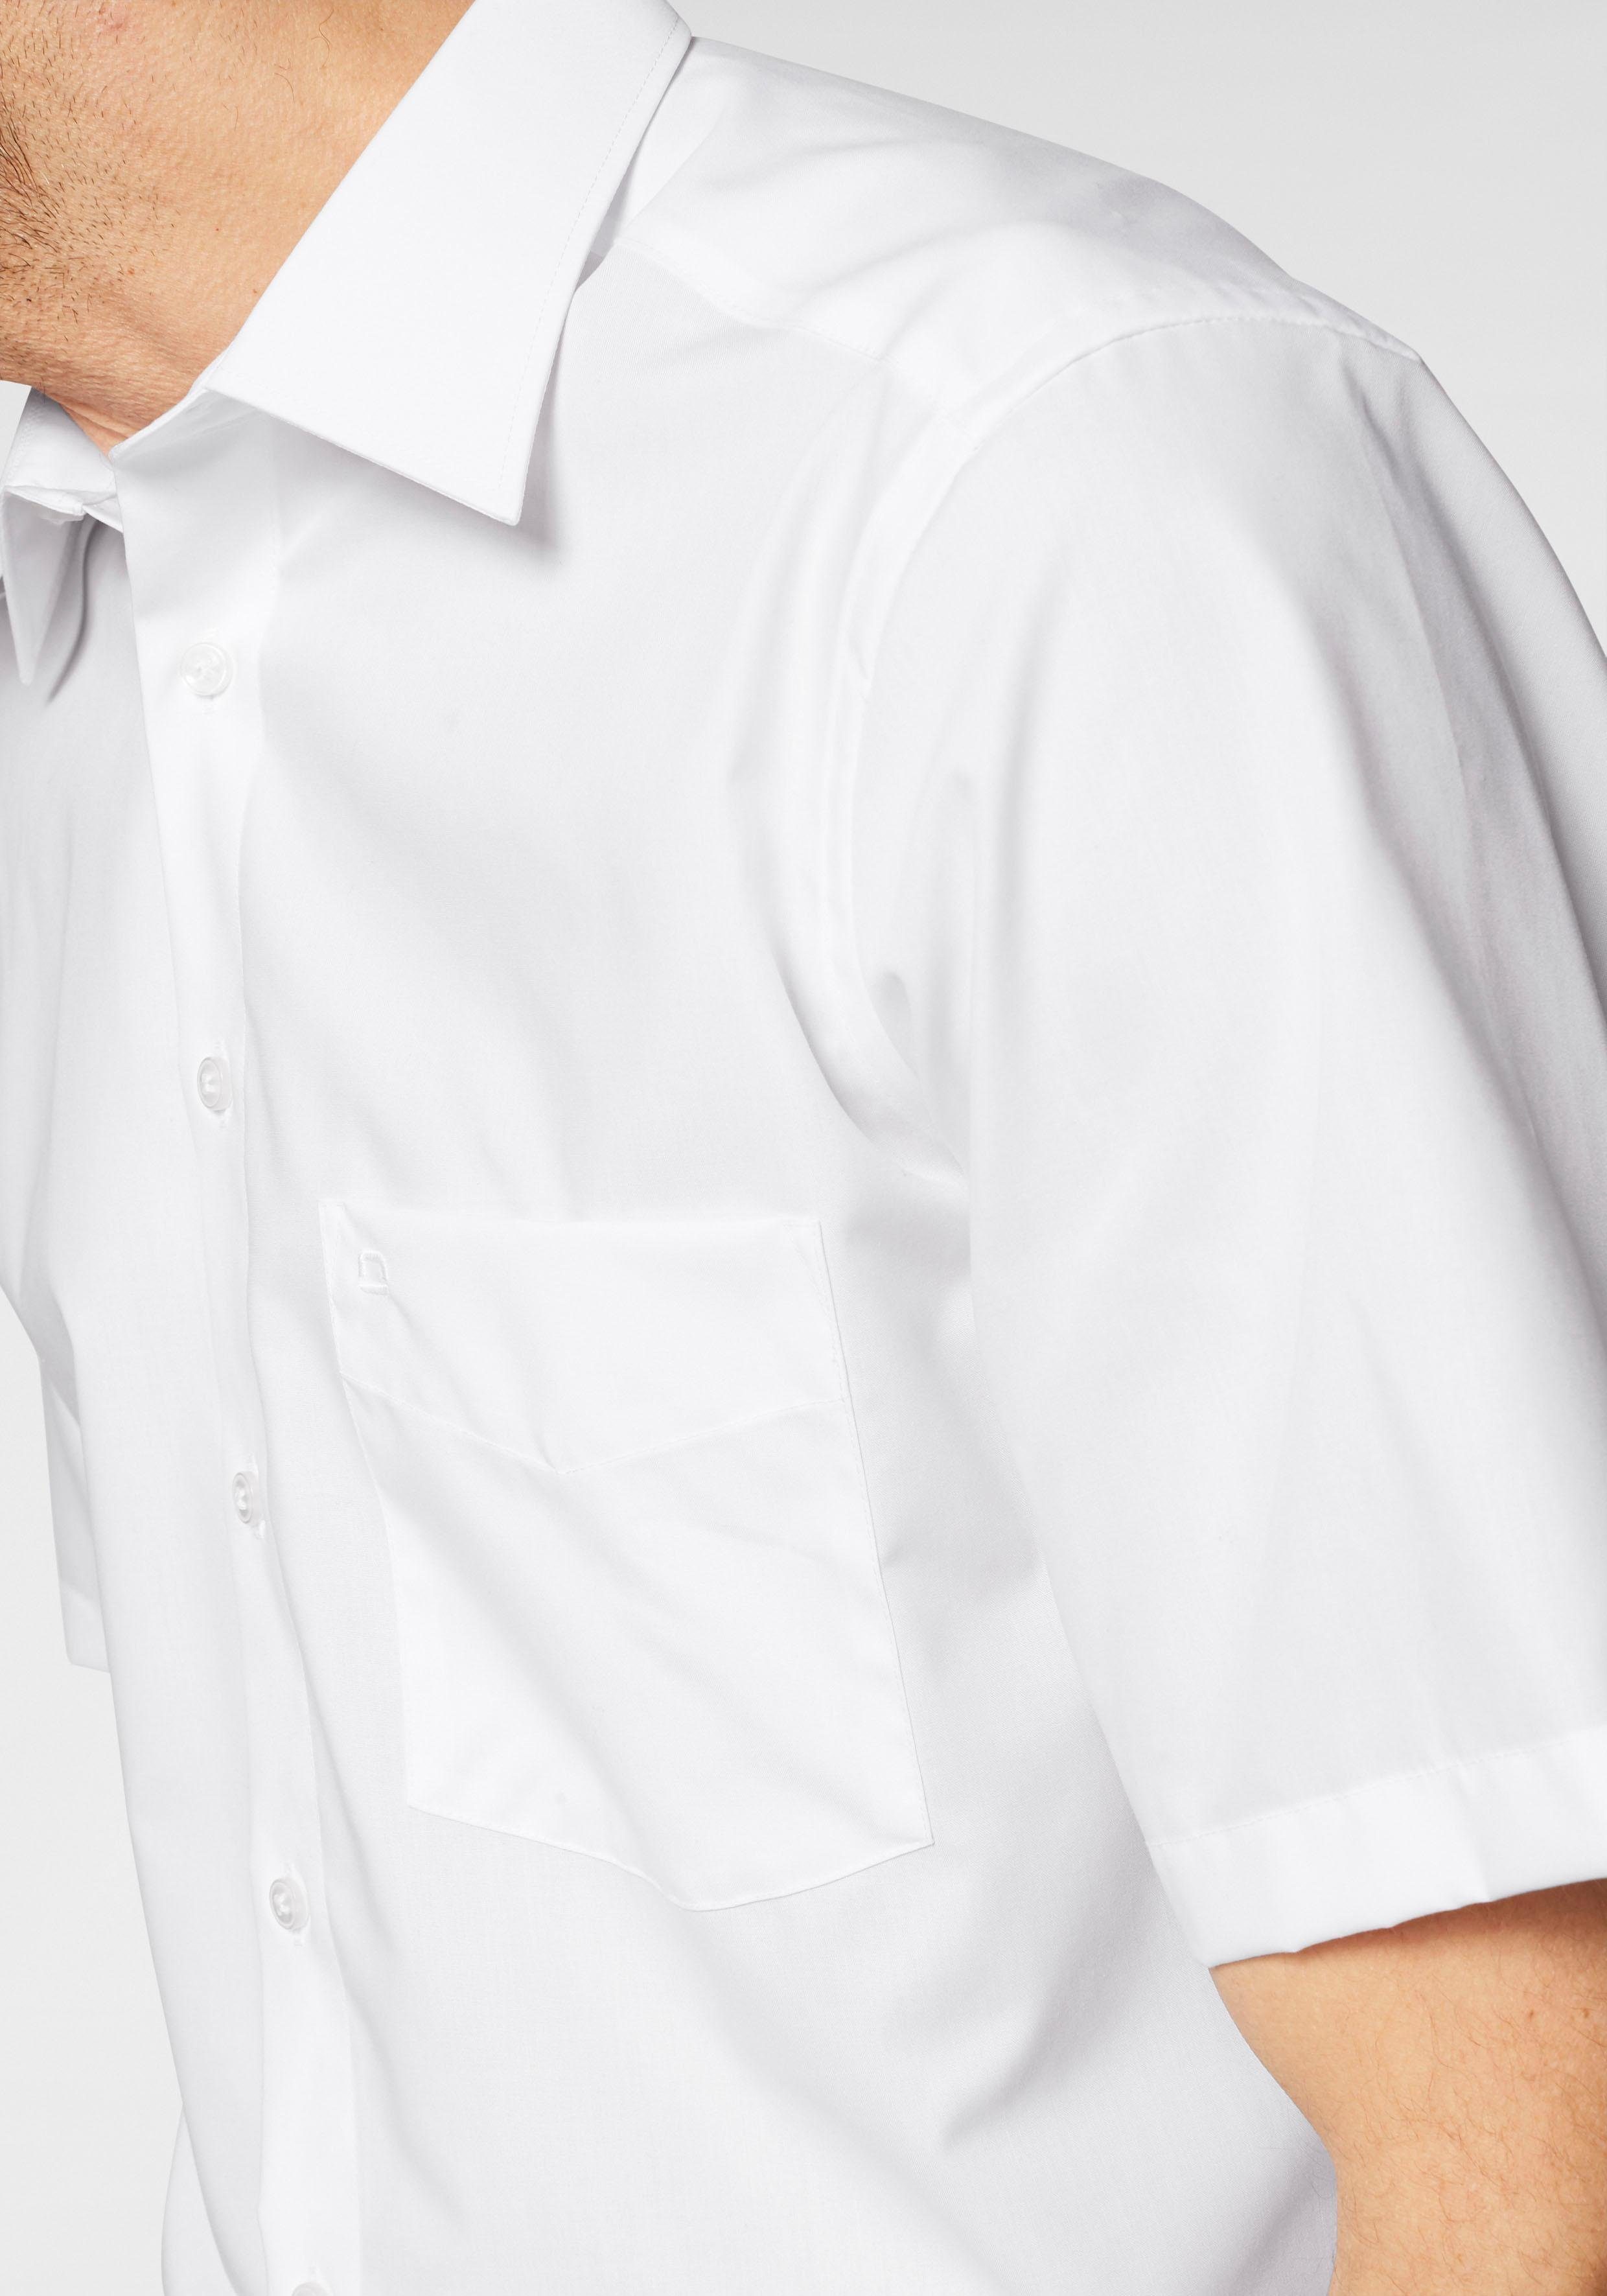 OLYMP Businesshemd Luxor comfort-fit Kurzarmhemd weiß mit Brusttasche, bügelfrei